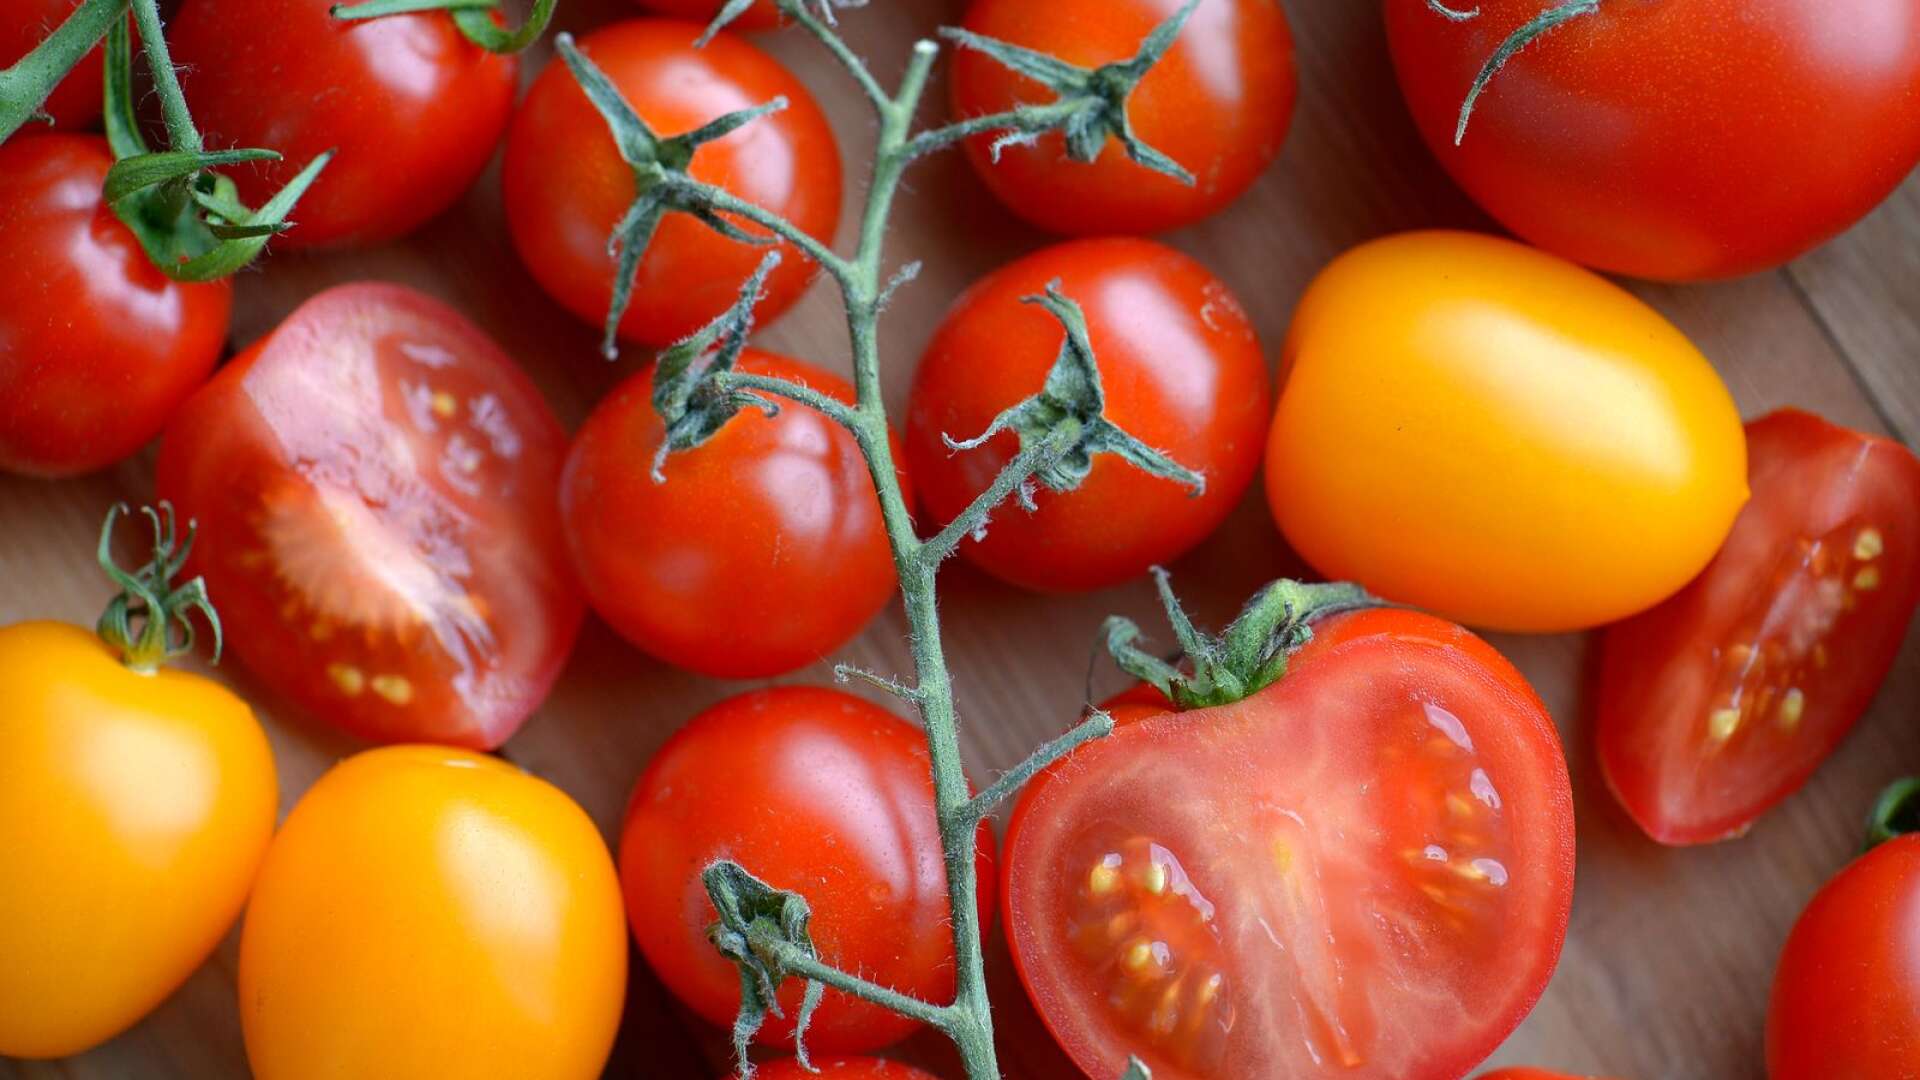 Mer än hälften av svenskarna är till exempel osäkra på om en tomat innehåller dna. Sex procent är förvissade om att tomater saknar arvsanlag, skriver Per-Ola Olsson.